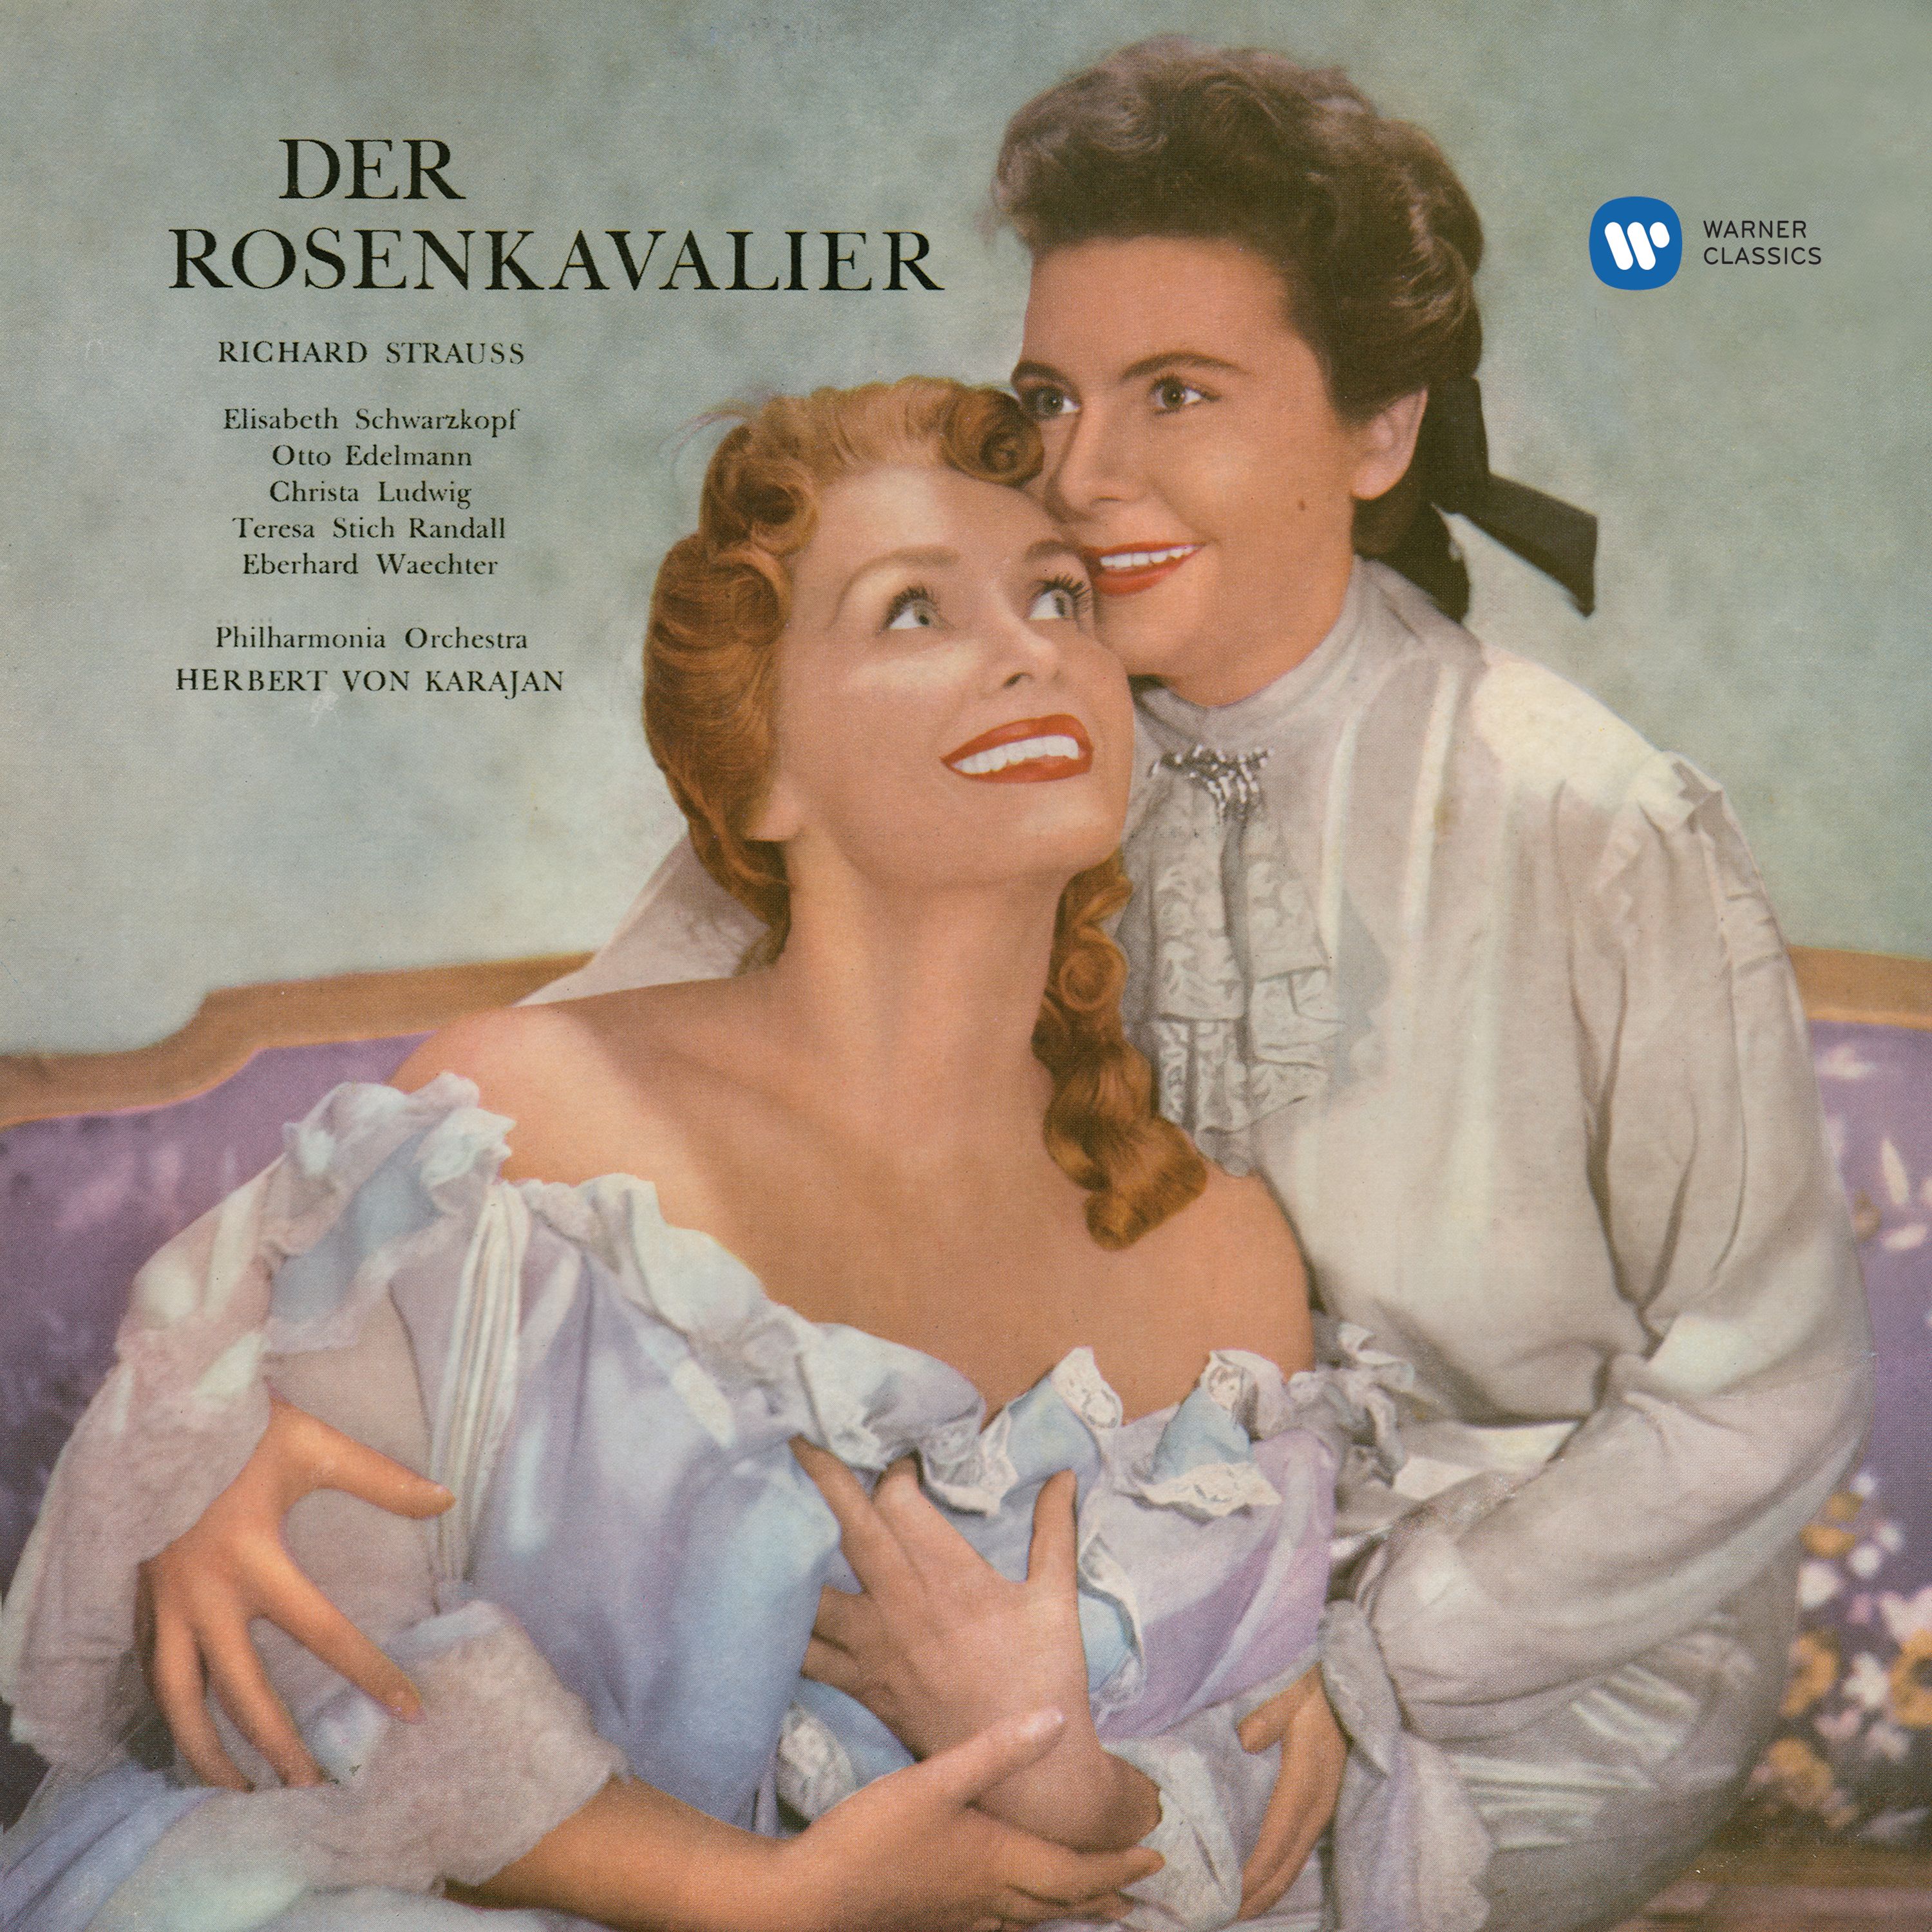 Der Rosenkavalier, Op. 59, Act 1: "Lachst du mich aus? ... Lach' ich dich aus?" (Octavian, Marschallin)